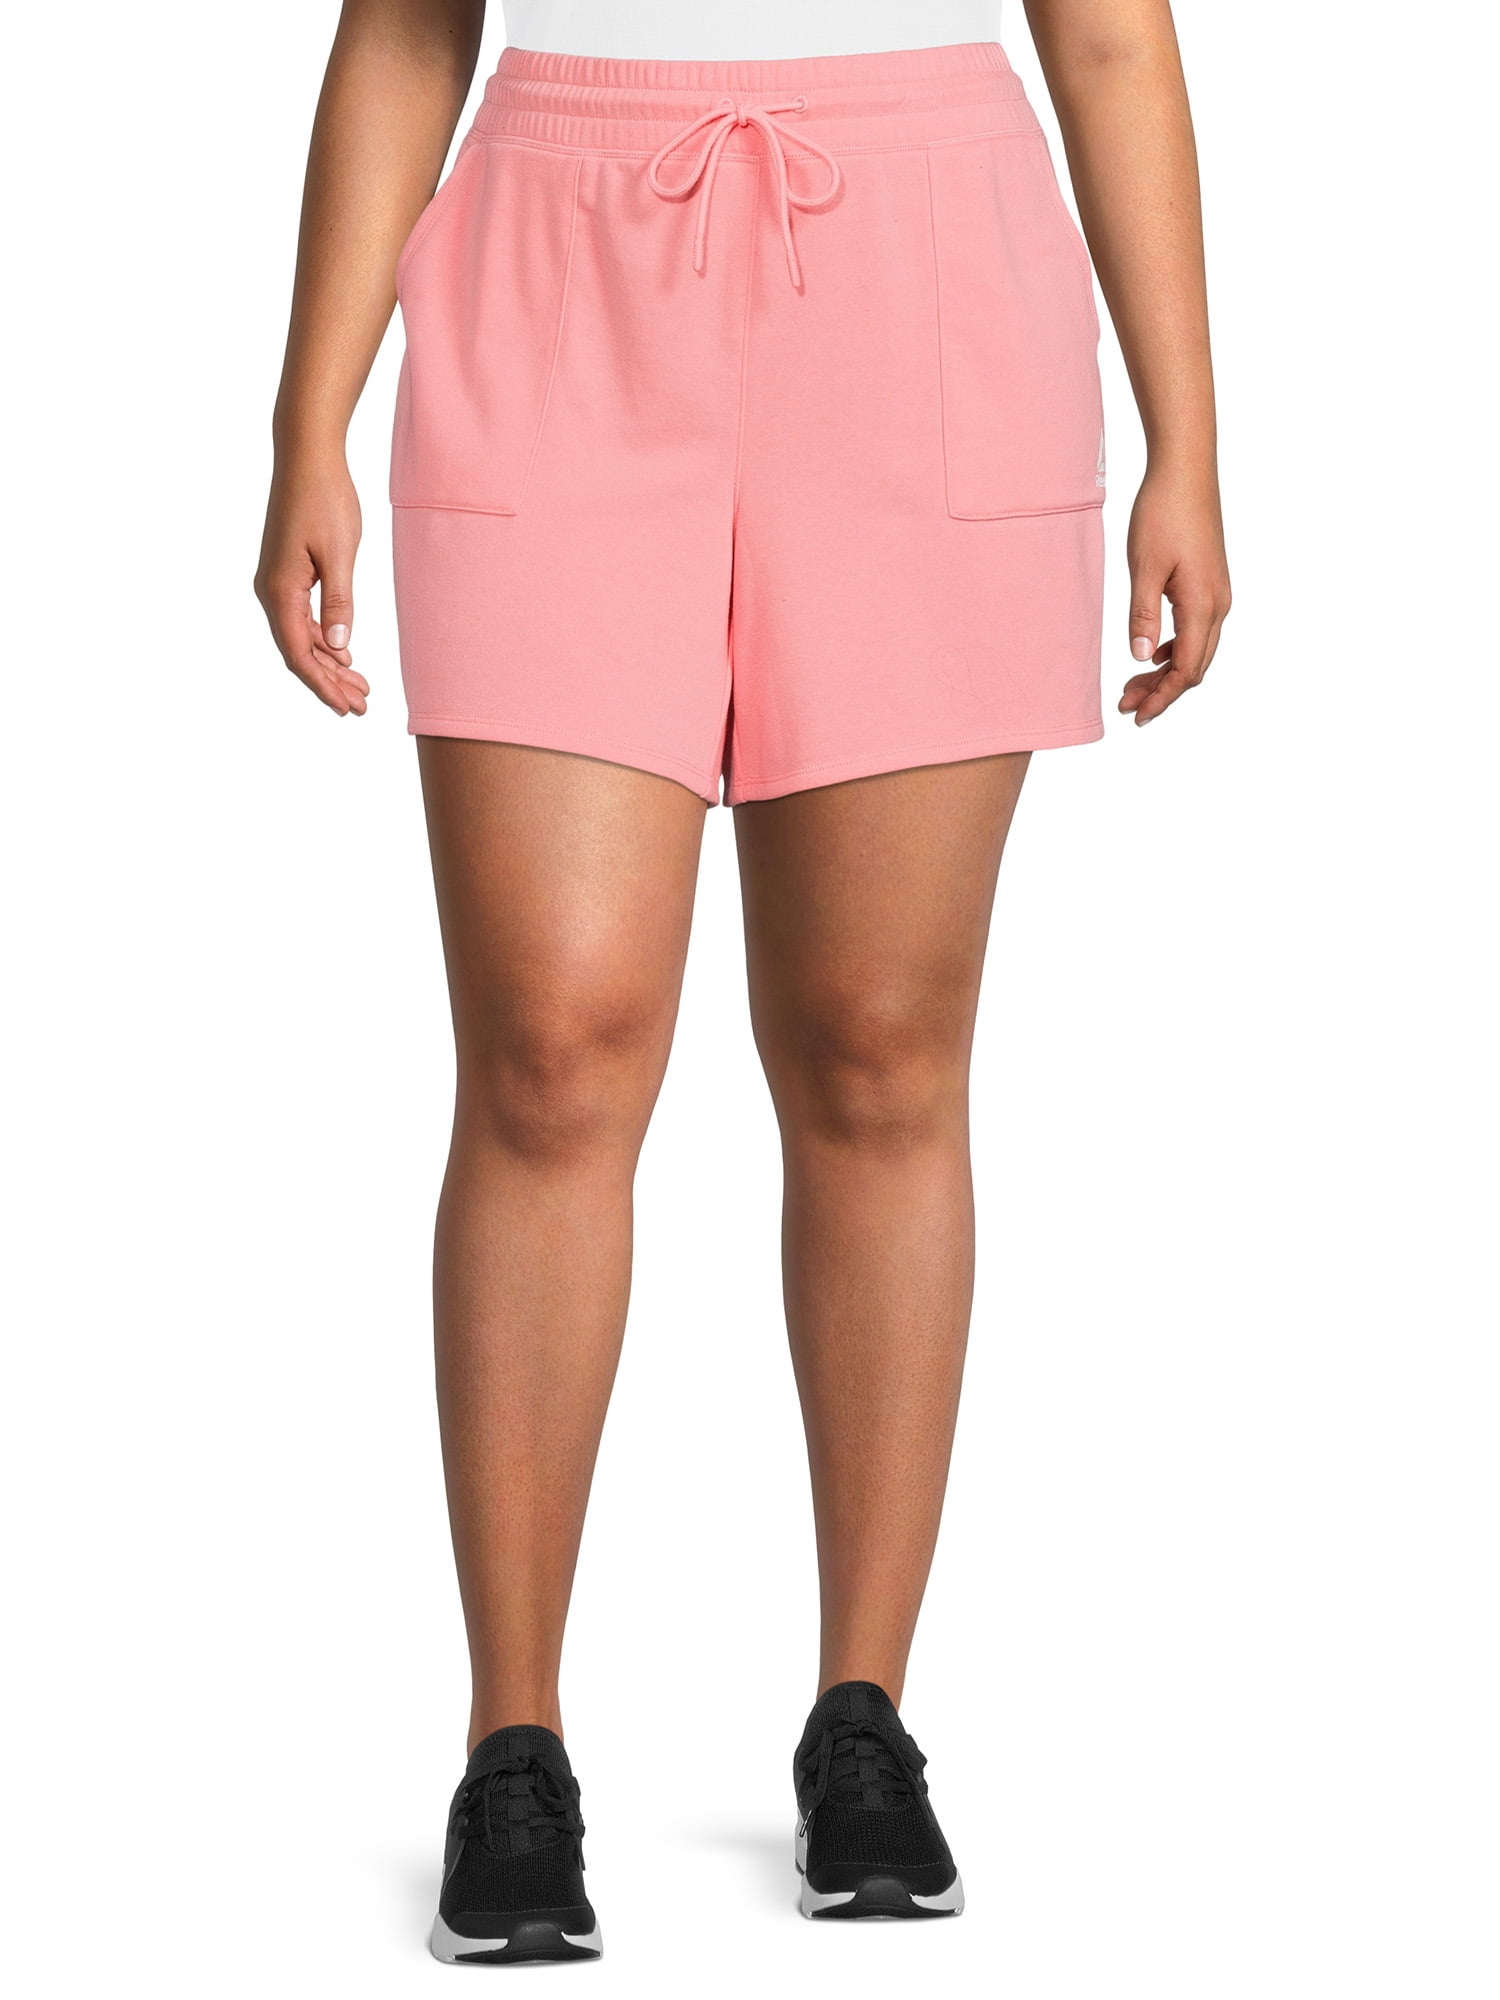 Reebok Women's Plus Size 4" Inseam Favorite Short with Side Pockets